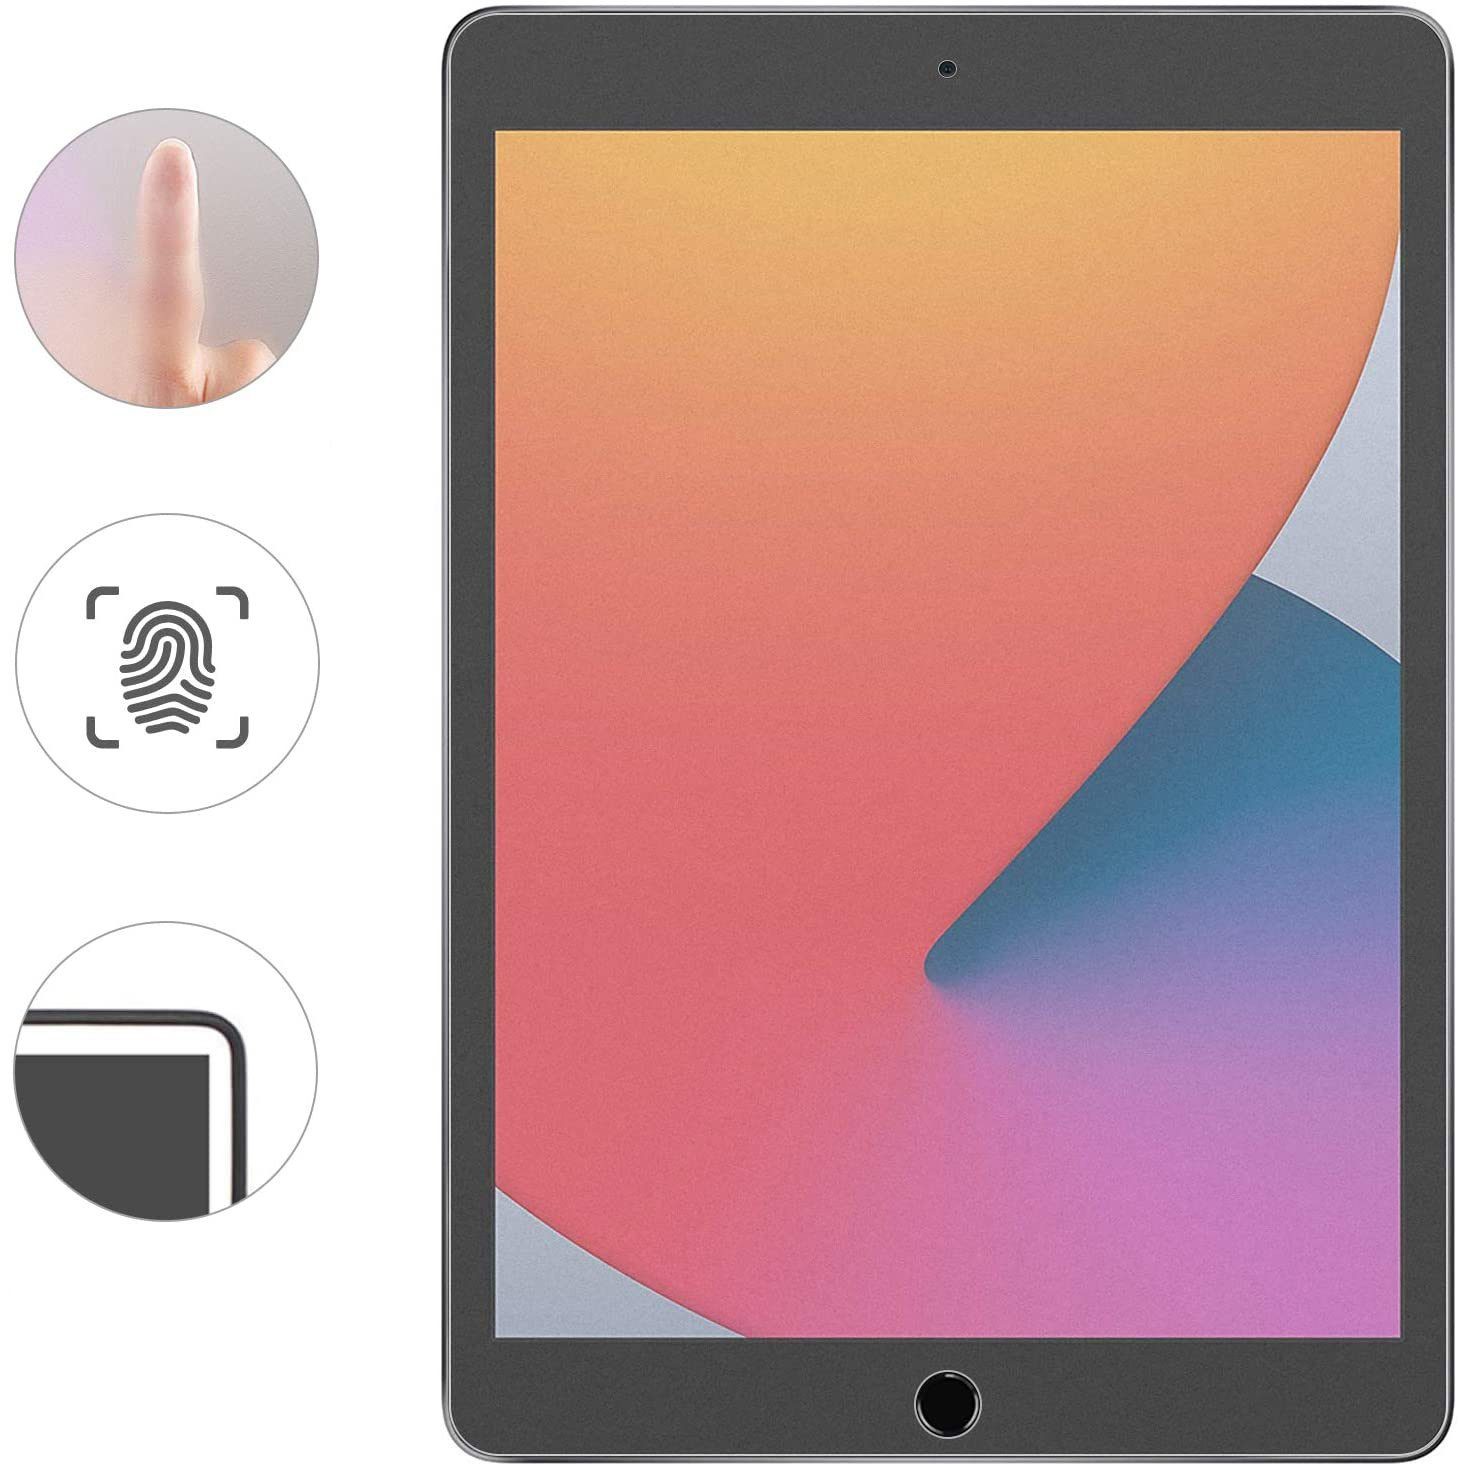 Prima24 Matte Papier Folie für iPad 10,2 Zoll 2021, 2020, 2019 Generation Displayfolie Schutzfolie zum Schreiben / 8 / 7 iPad 9 Zeichnen und Skizzieren wie auf Papier 